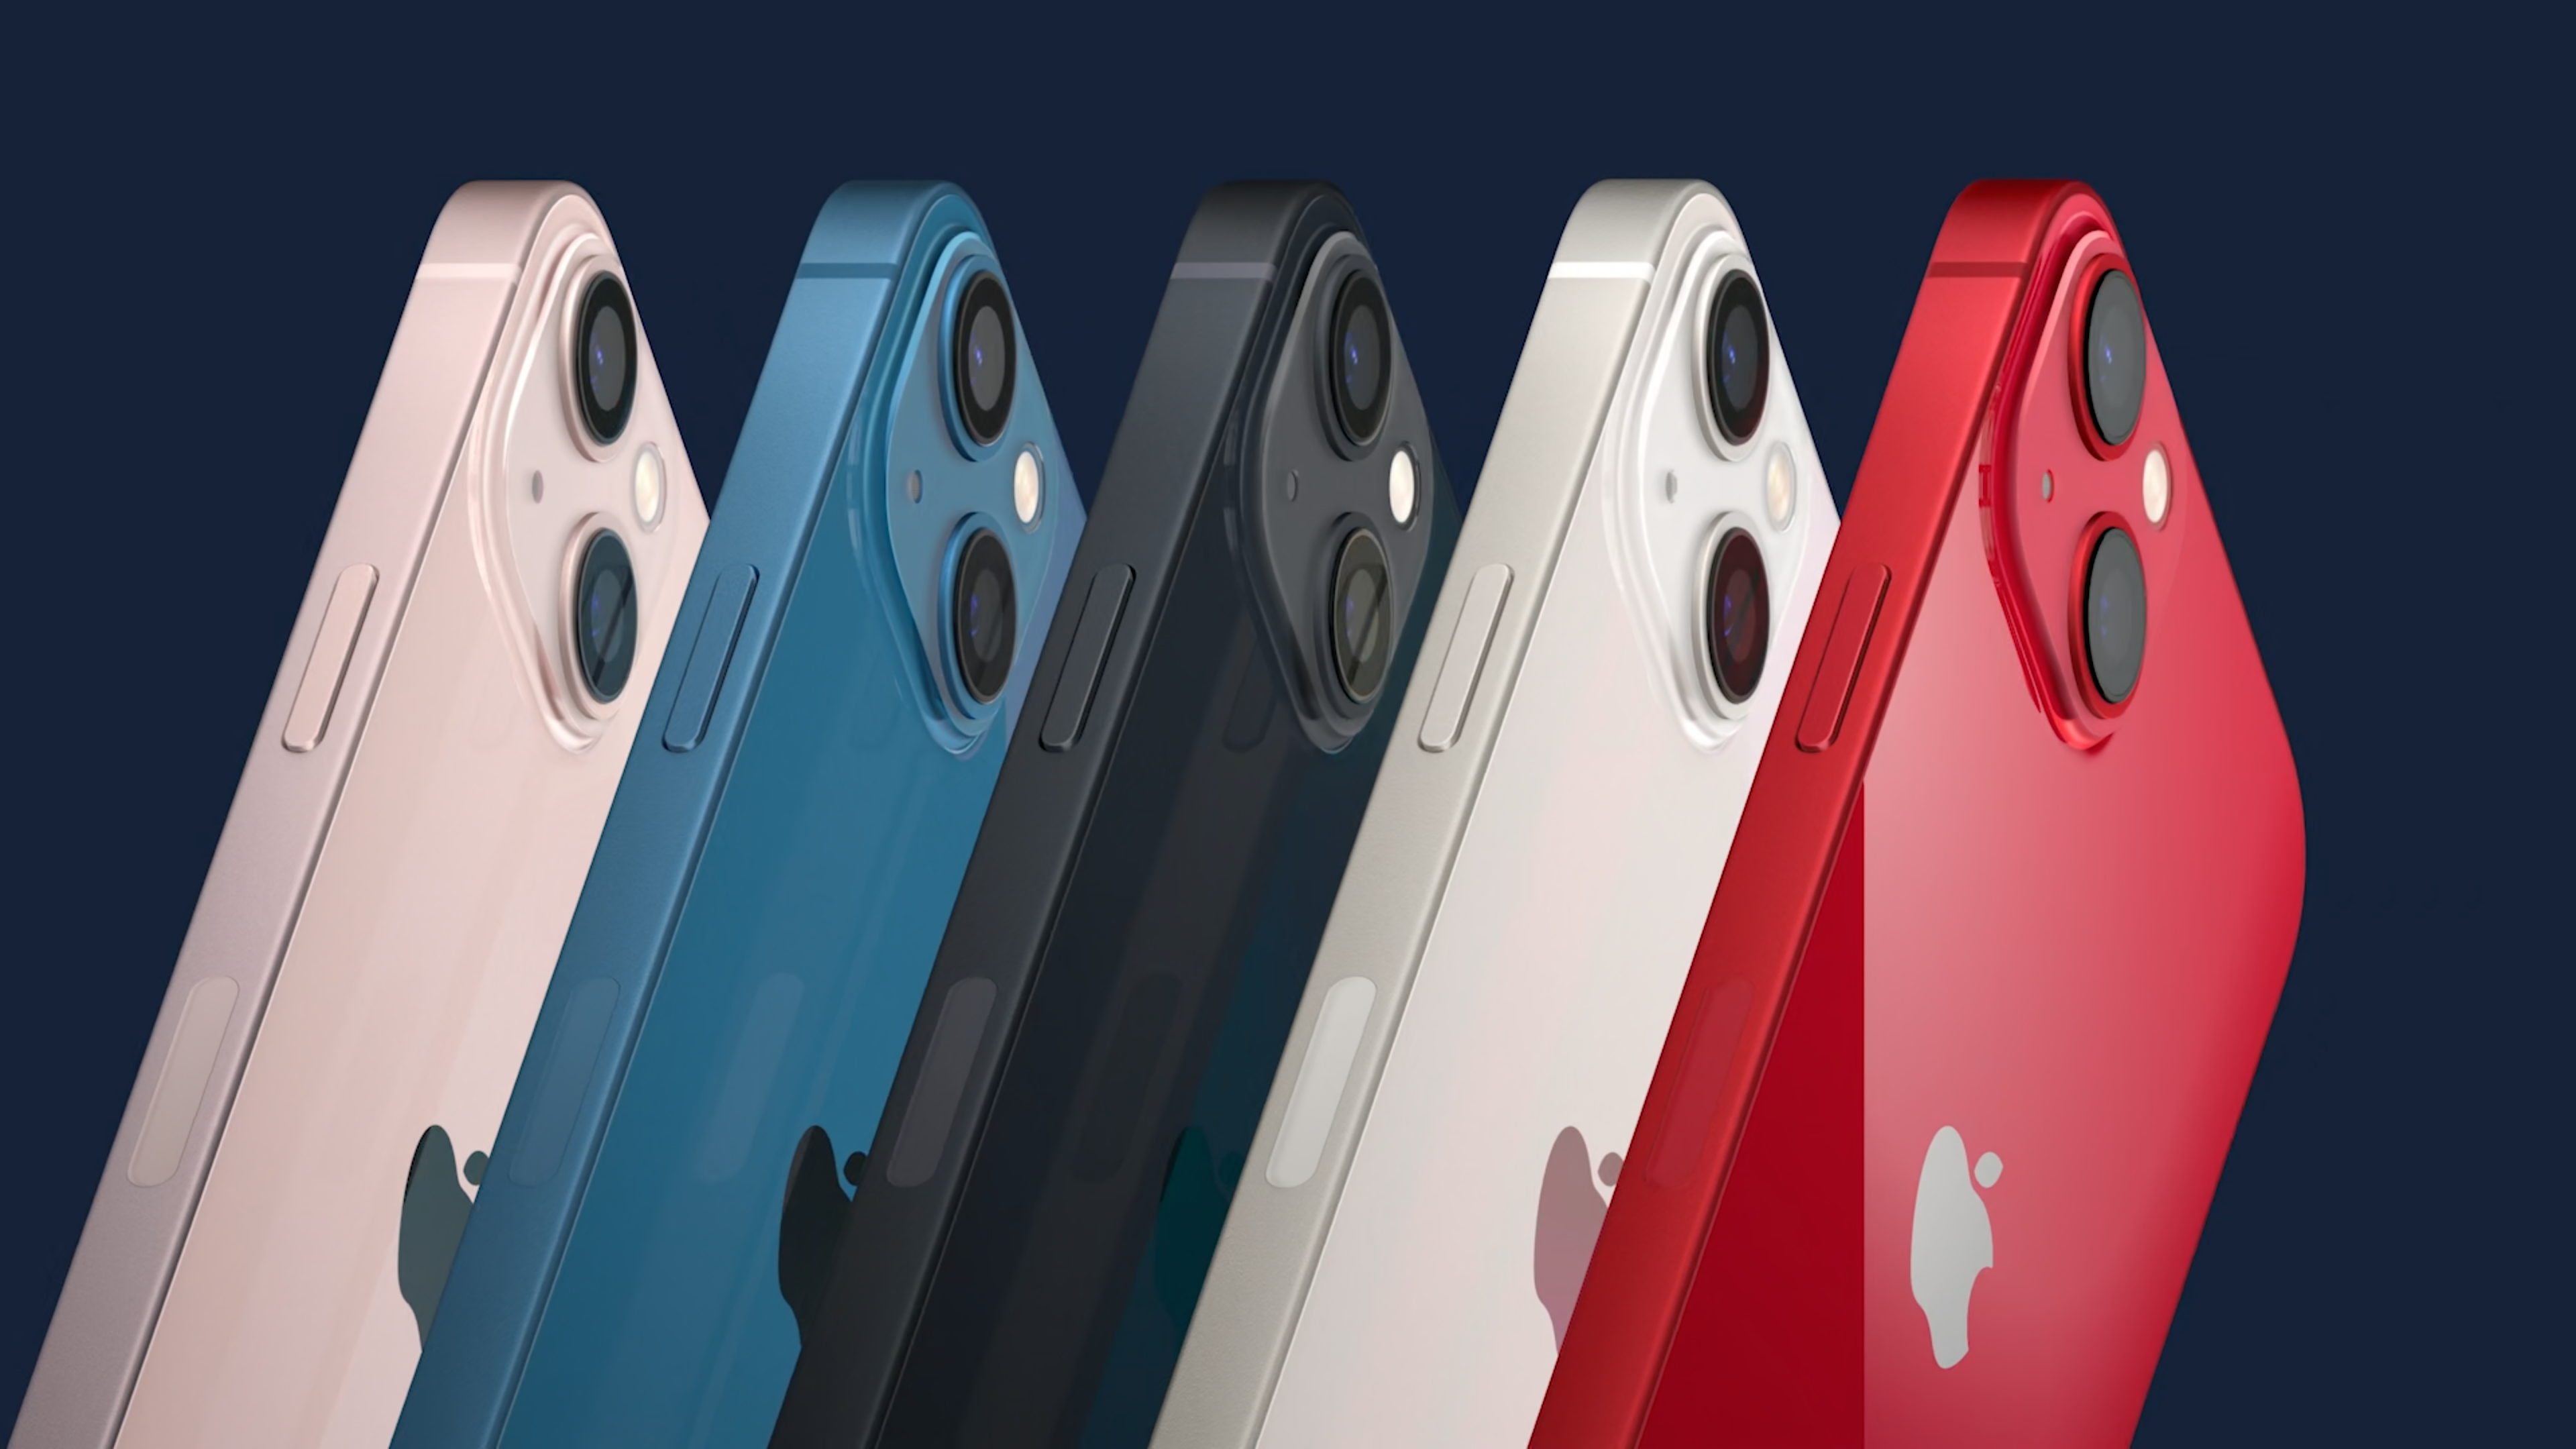 Apple iPhone 13 existuje hned v 5 různých barevných variantách – bílá (Starlight), tmavě šedá (Midnight), modrá (Blue), červená (Product RED) a růžová (Pink).